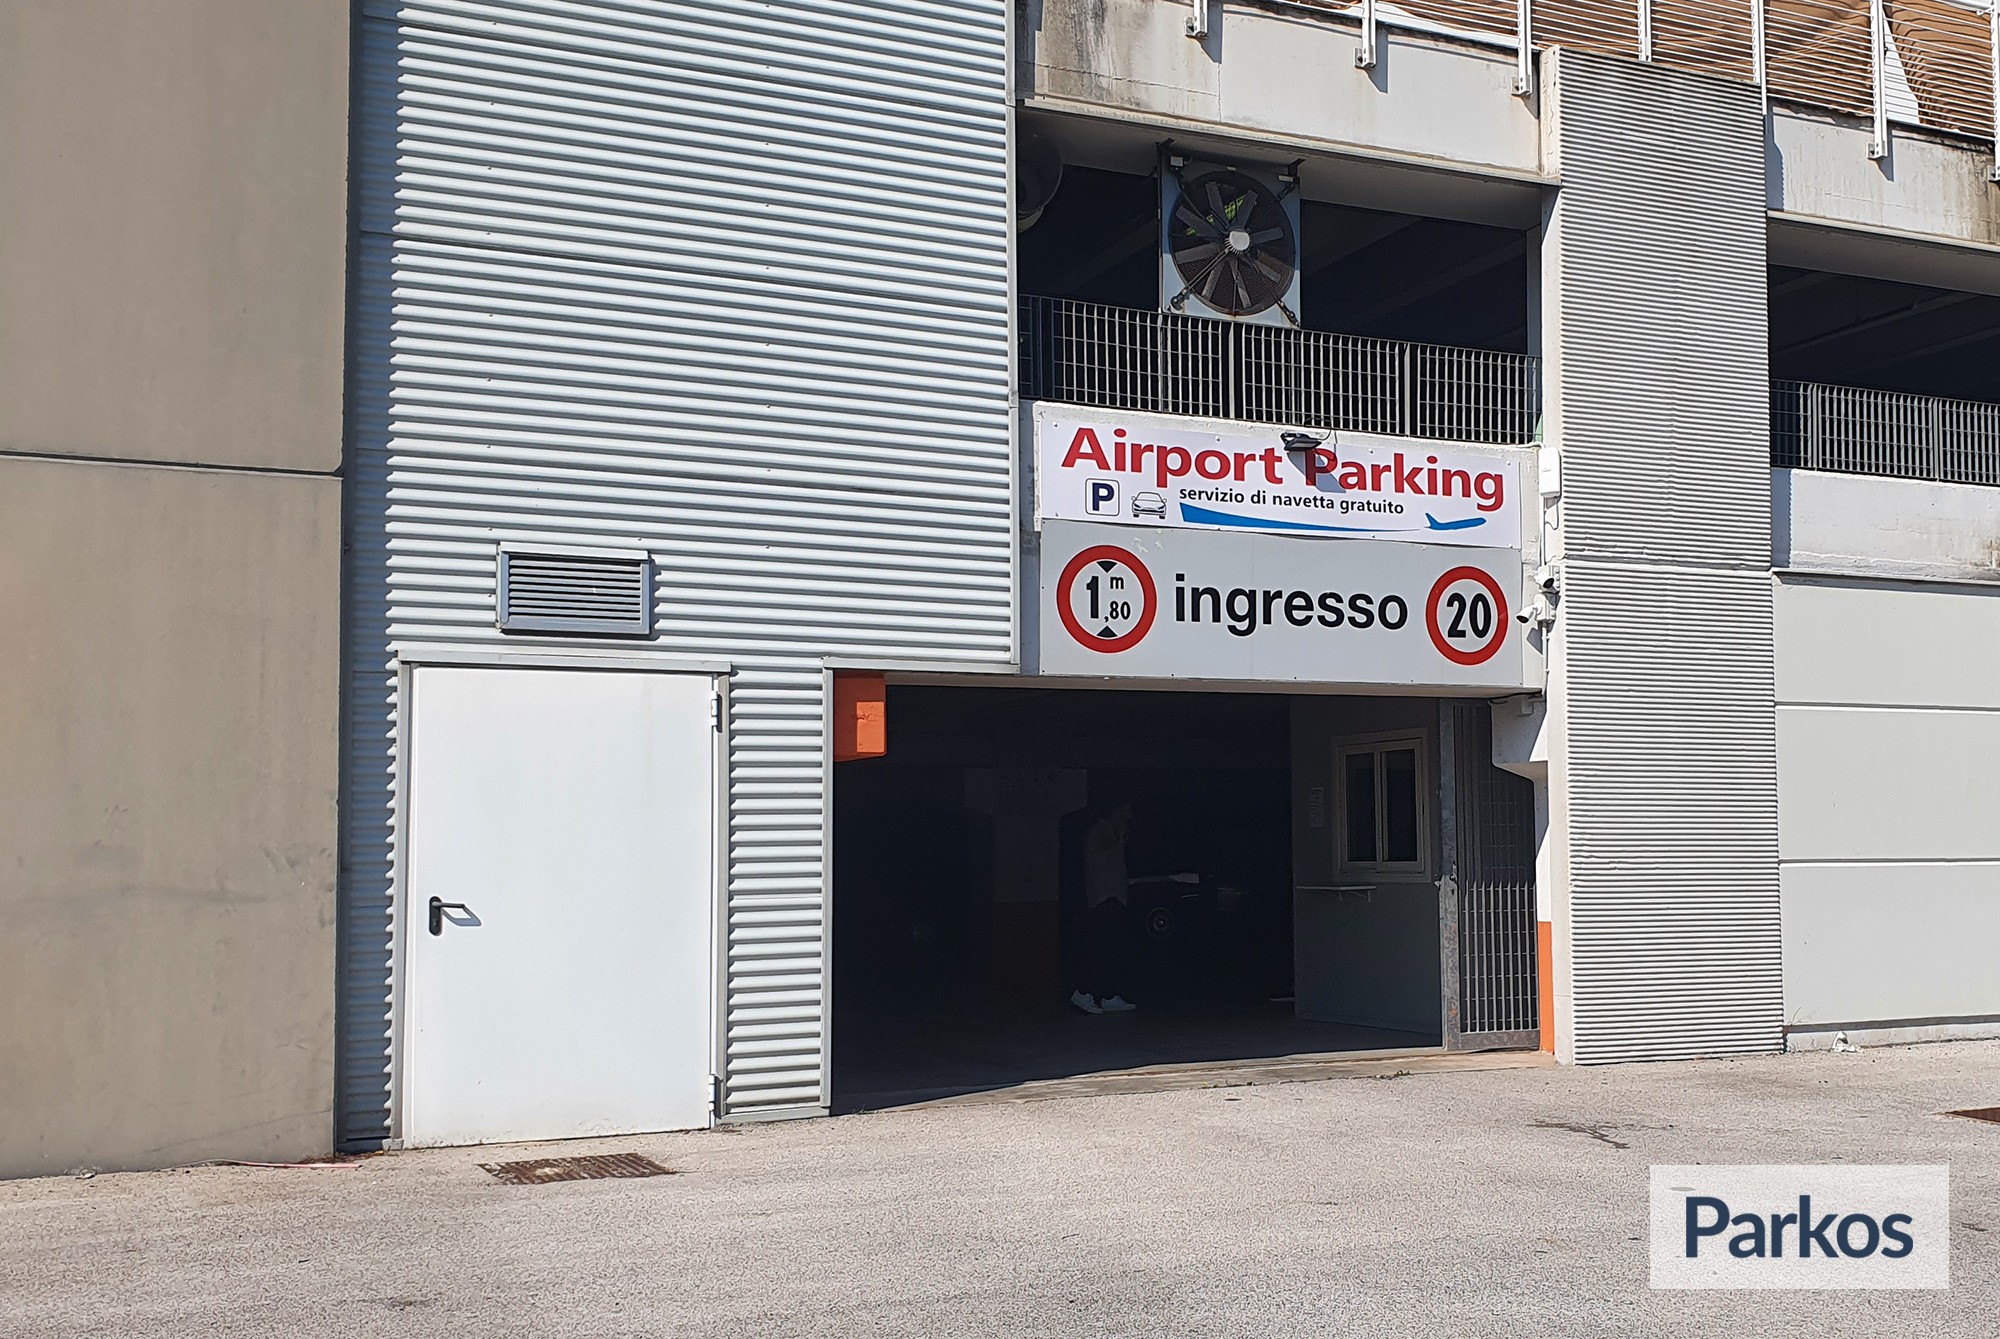 Airport Parking Bari (Paga in parcheggio) - Parcheggio Aeroporto Bari - picture 1